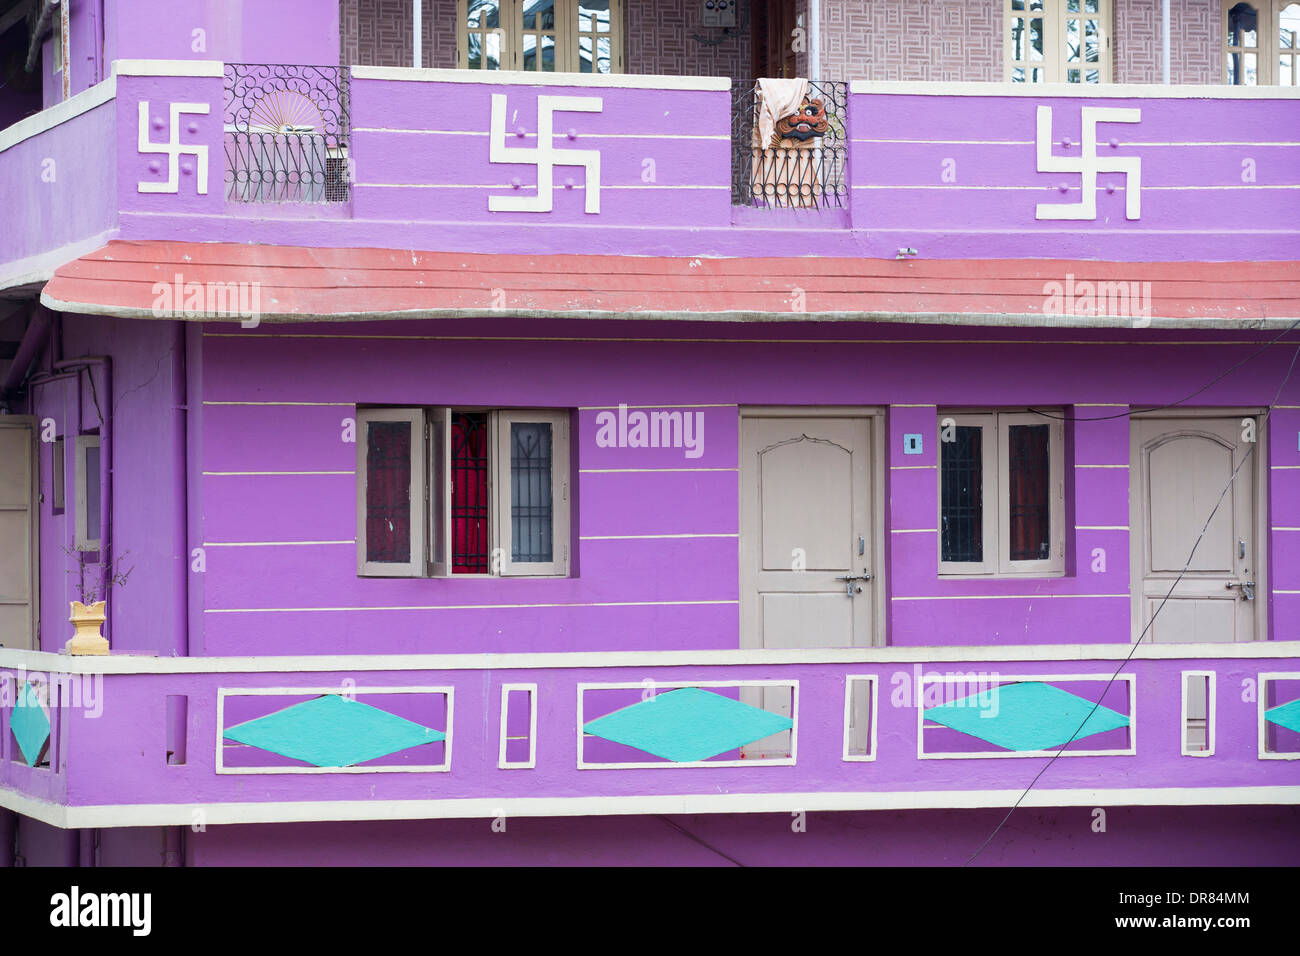 Hinduistische Symbole auf ein Haus in der Nähe von Mysore, Indien, die Symbl wurde von des Nazis entführt, sondern ist ein uraltes religiöses Symbol. Stockfoto